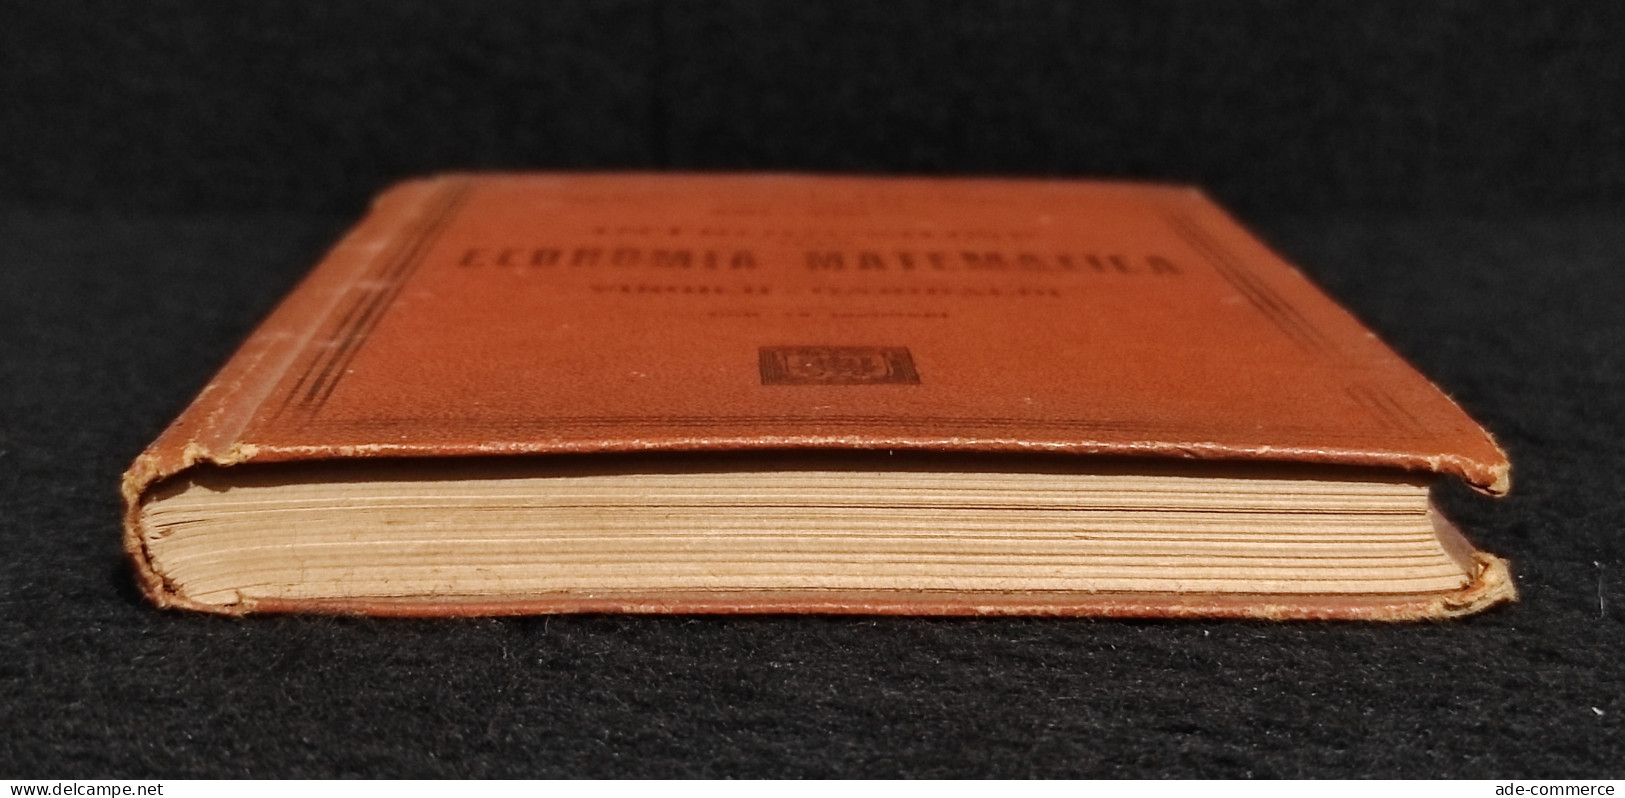 Introduzione Economia Matematica - Manuale Hoepli - 1899 - Handbücher Für Sammler